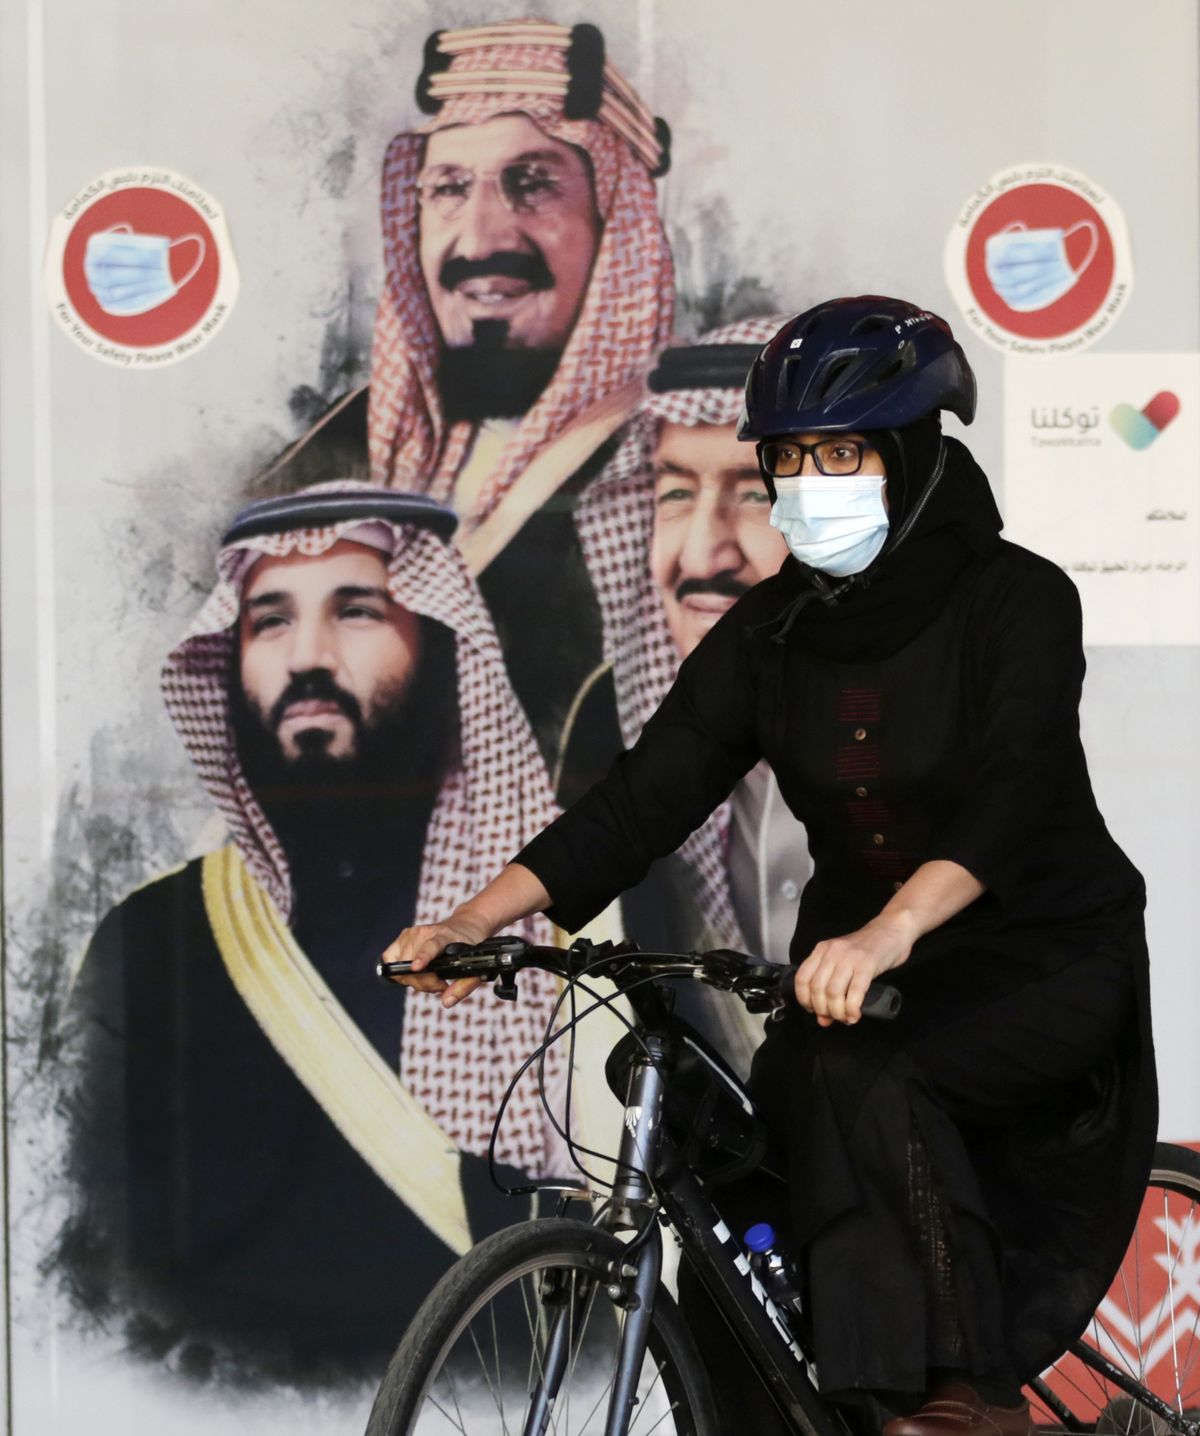 2021. gada 6. marts, Saūda Arābija, Džida. Sieviešu riteņbraucēju komandas dalībniece Amala brauc ar velosipēdu gar reklāmkarogu, kurā redzams Saūda Arābijas karalis Salmans, pa labi kroņprincis Mohammeds bin Salmans un pa kreisi - Saūda Arābijas dibinātājs, bijušais karalis Abduls Azizs Al Sauds. Sieviešu riteņbraucēju komanda tika izveidota 2019. gadā ar mērķi popularizēt sieviešu sportu. Pirms Starptautiskās sieviešu dienas riteņbraucējas organizē publisku velobraucienu, lai pievērstu sabiedrības uzmanību. 